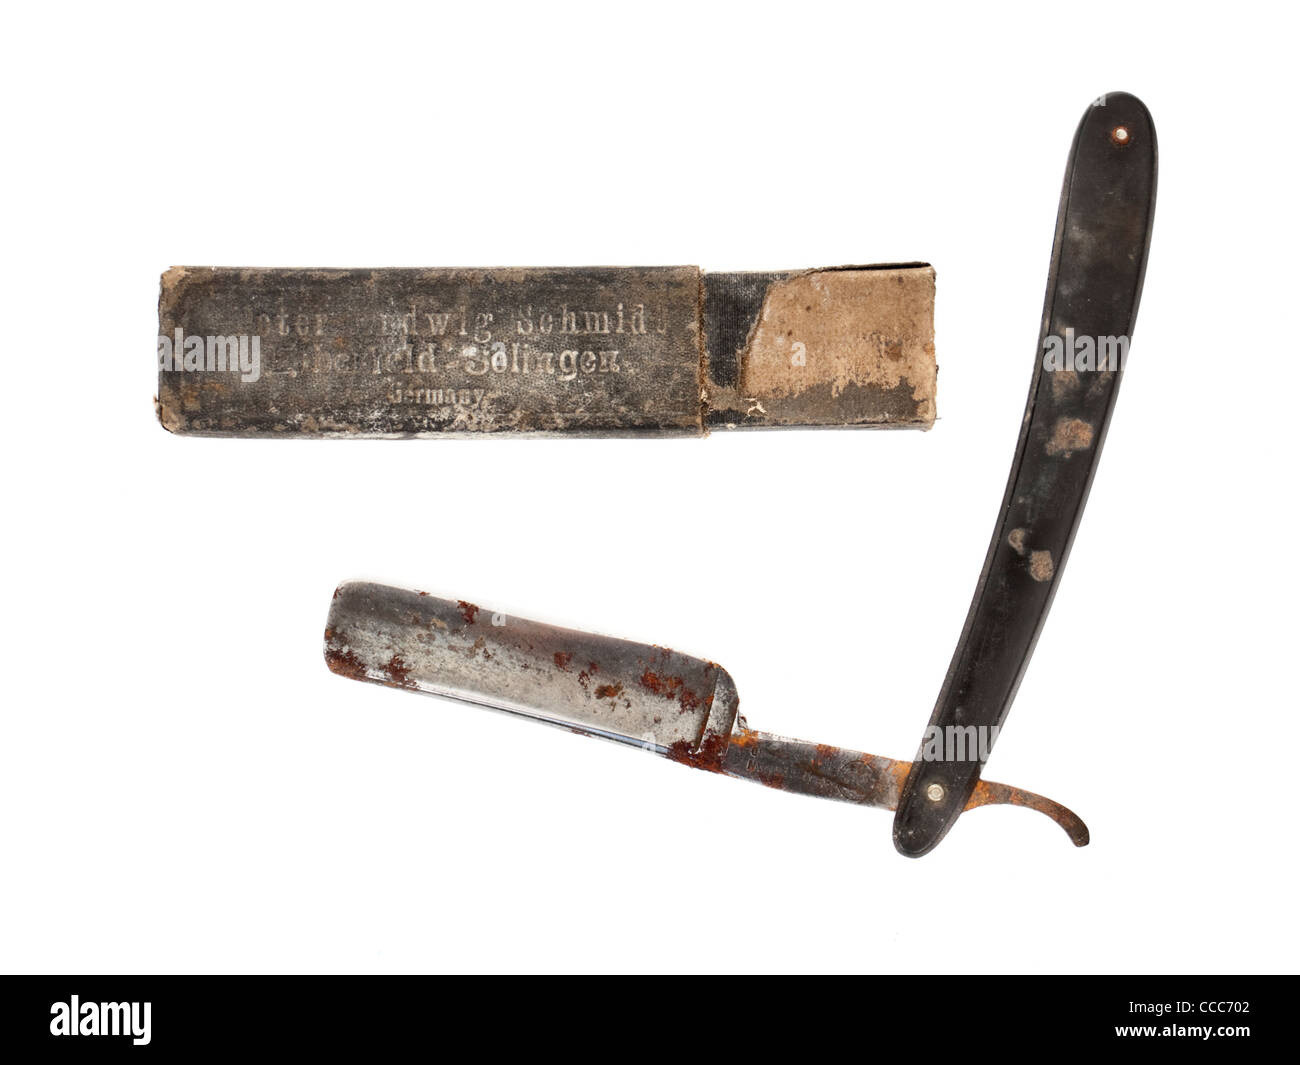 Antique razor blade by Peter Ludwig Schmidt, Elberfeld-Solingen, Germany Stock Photo